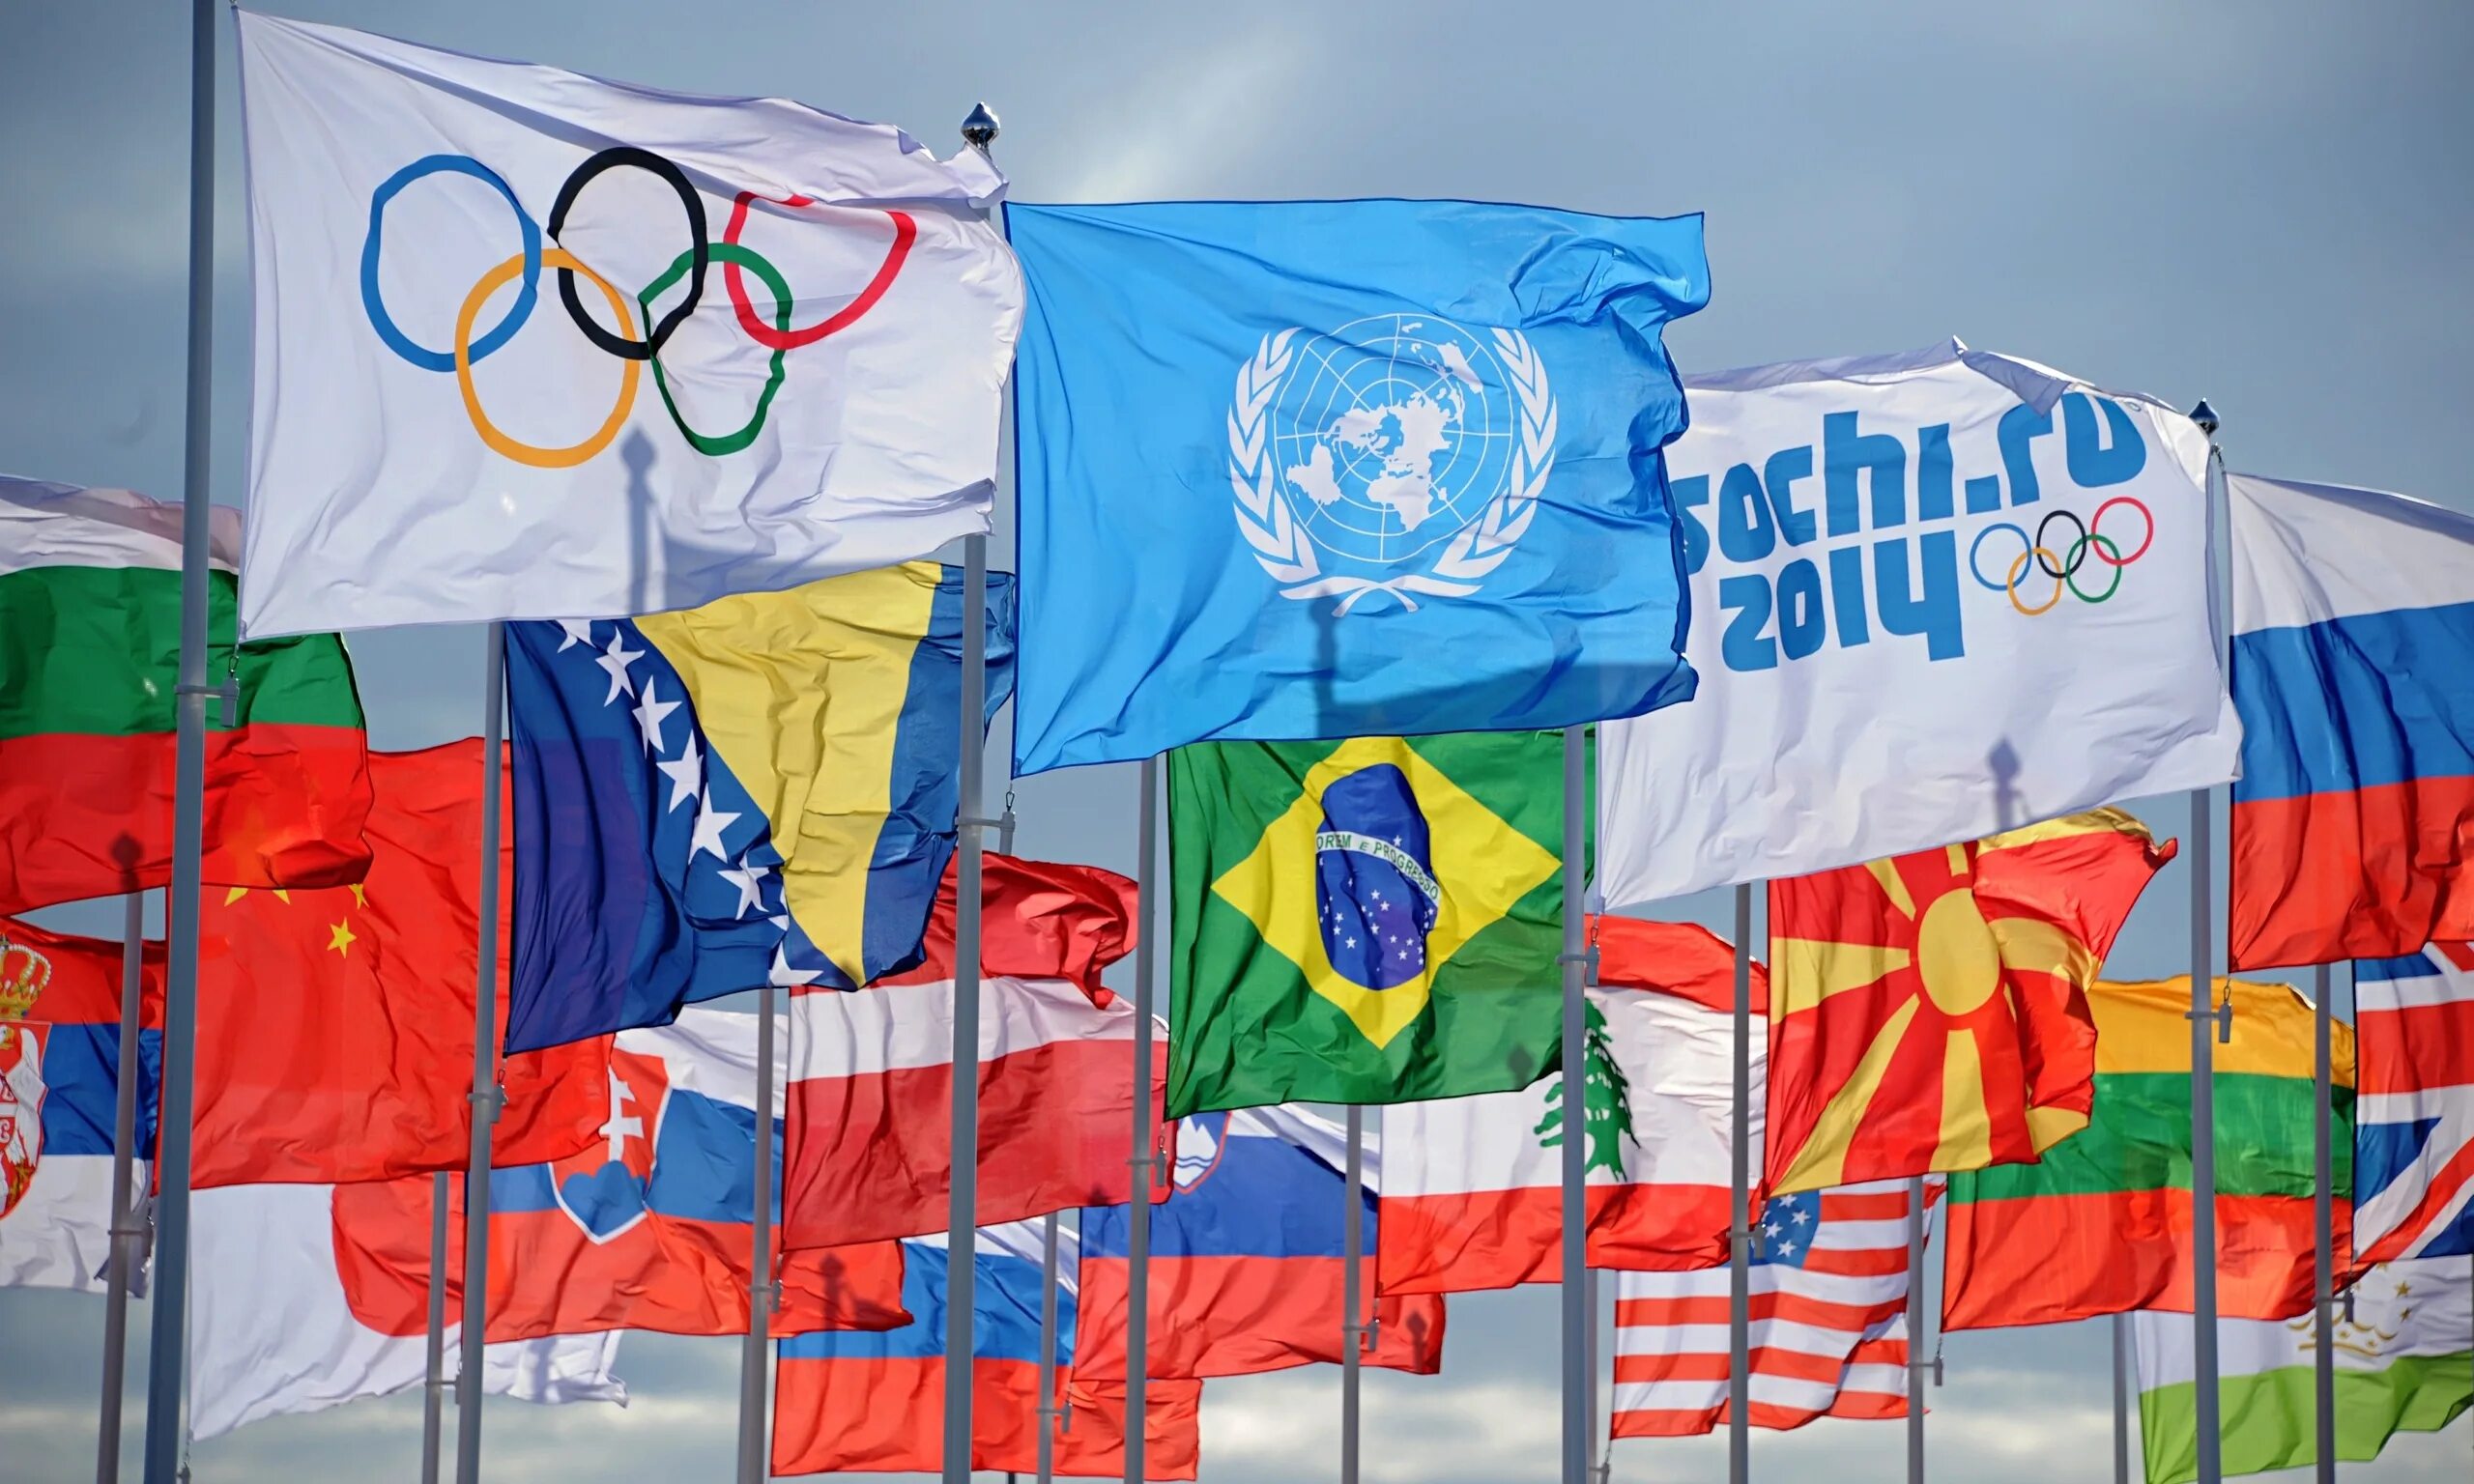 Олимпийские игры в Сочи 2014. Флаг Олимпийских игр Сочи 2014. Олимпийский флаг Сочи. Флаг олимпиады в Сочи. Олимпийские сборные стран